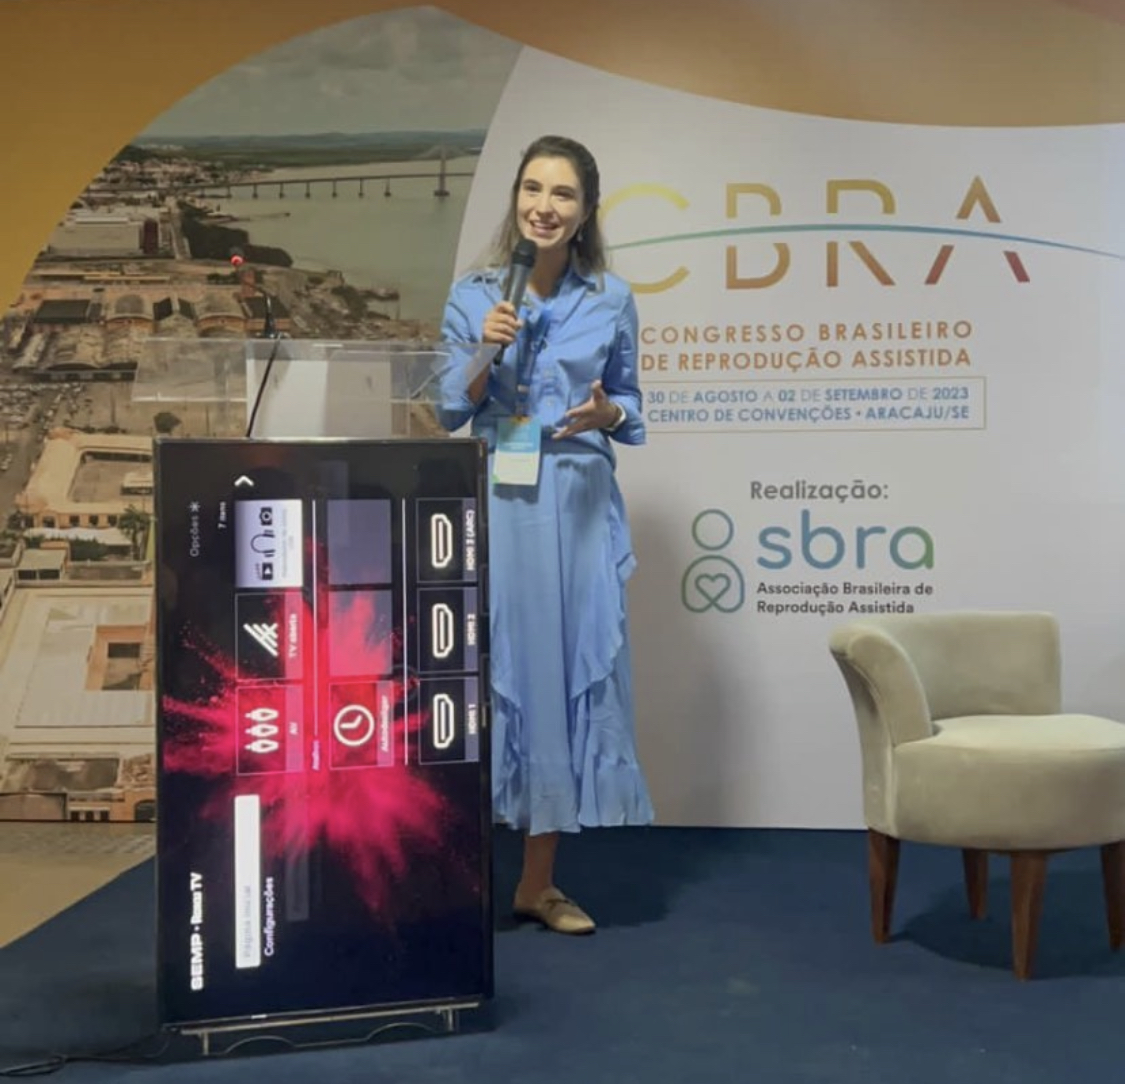 Ianae Ceschin no congresso brasileiro de reprodução assisitda CBRA

